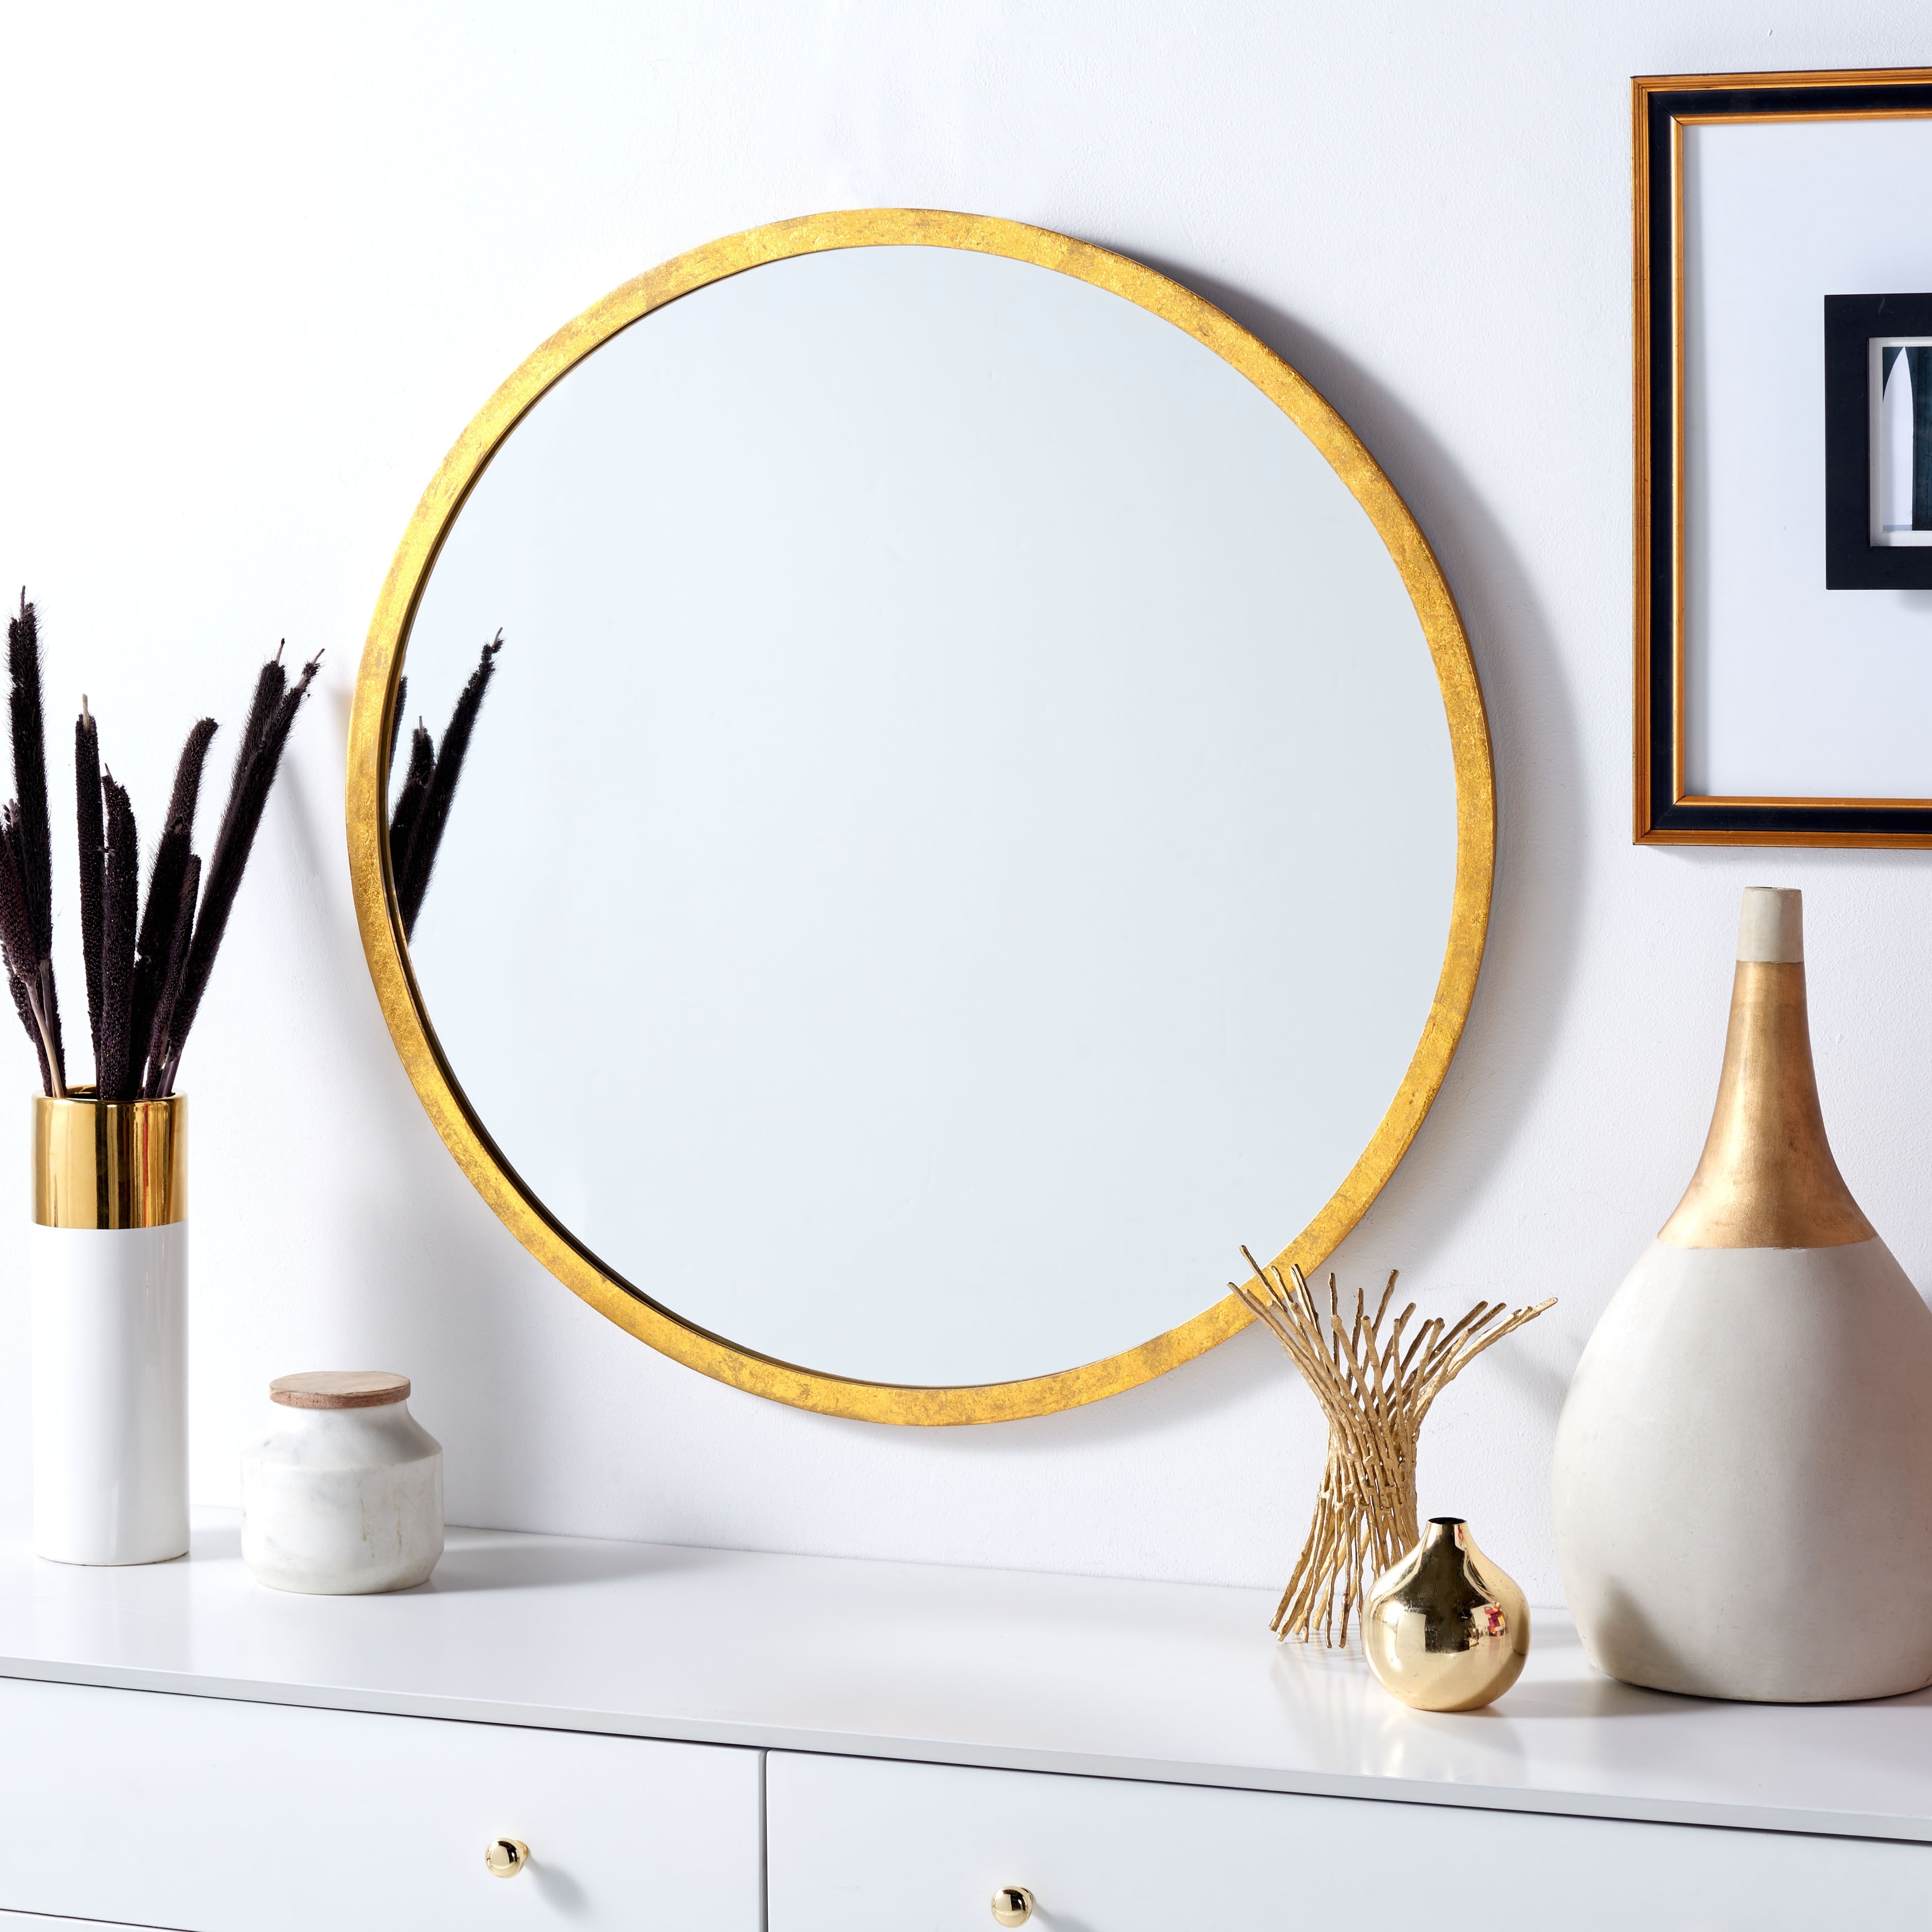 SAFAVIEH Adric 30-inch Round Gold Foil Mirror - 30" W x 1.3" D x 30" H